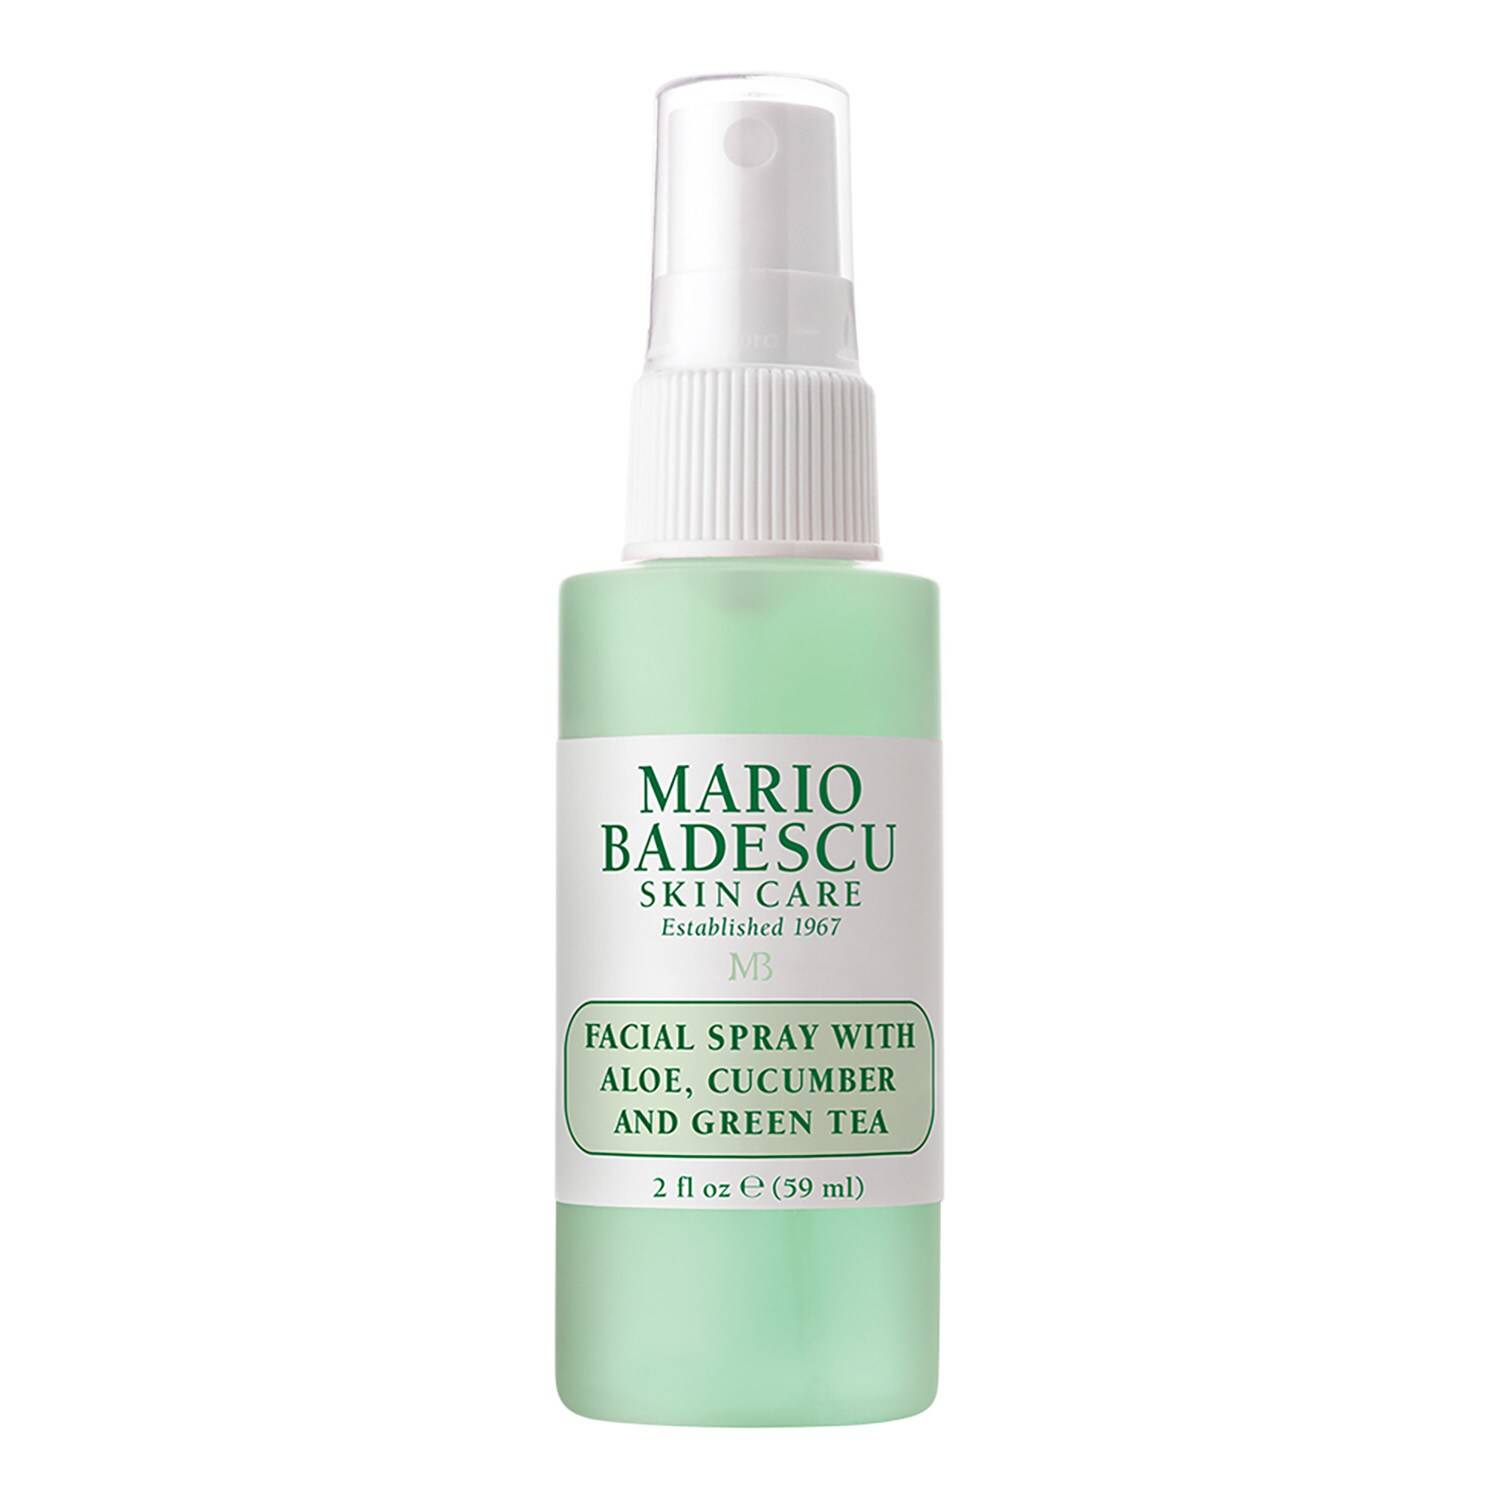 Mario Badescu Facial Spray With Aloe, Cucumber And Green Tea 59Ml